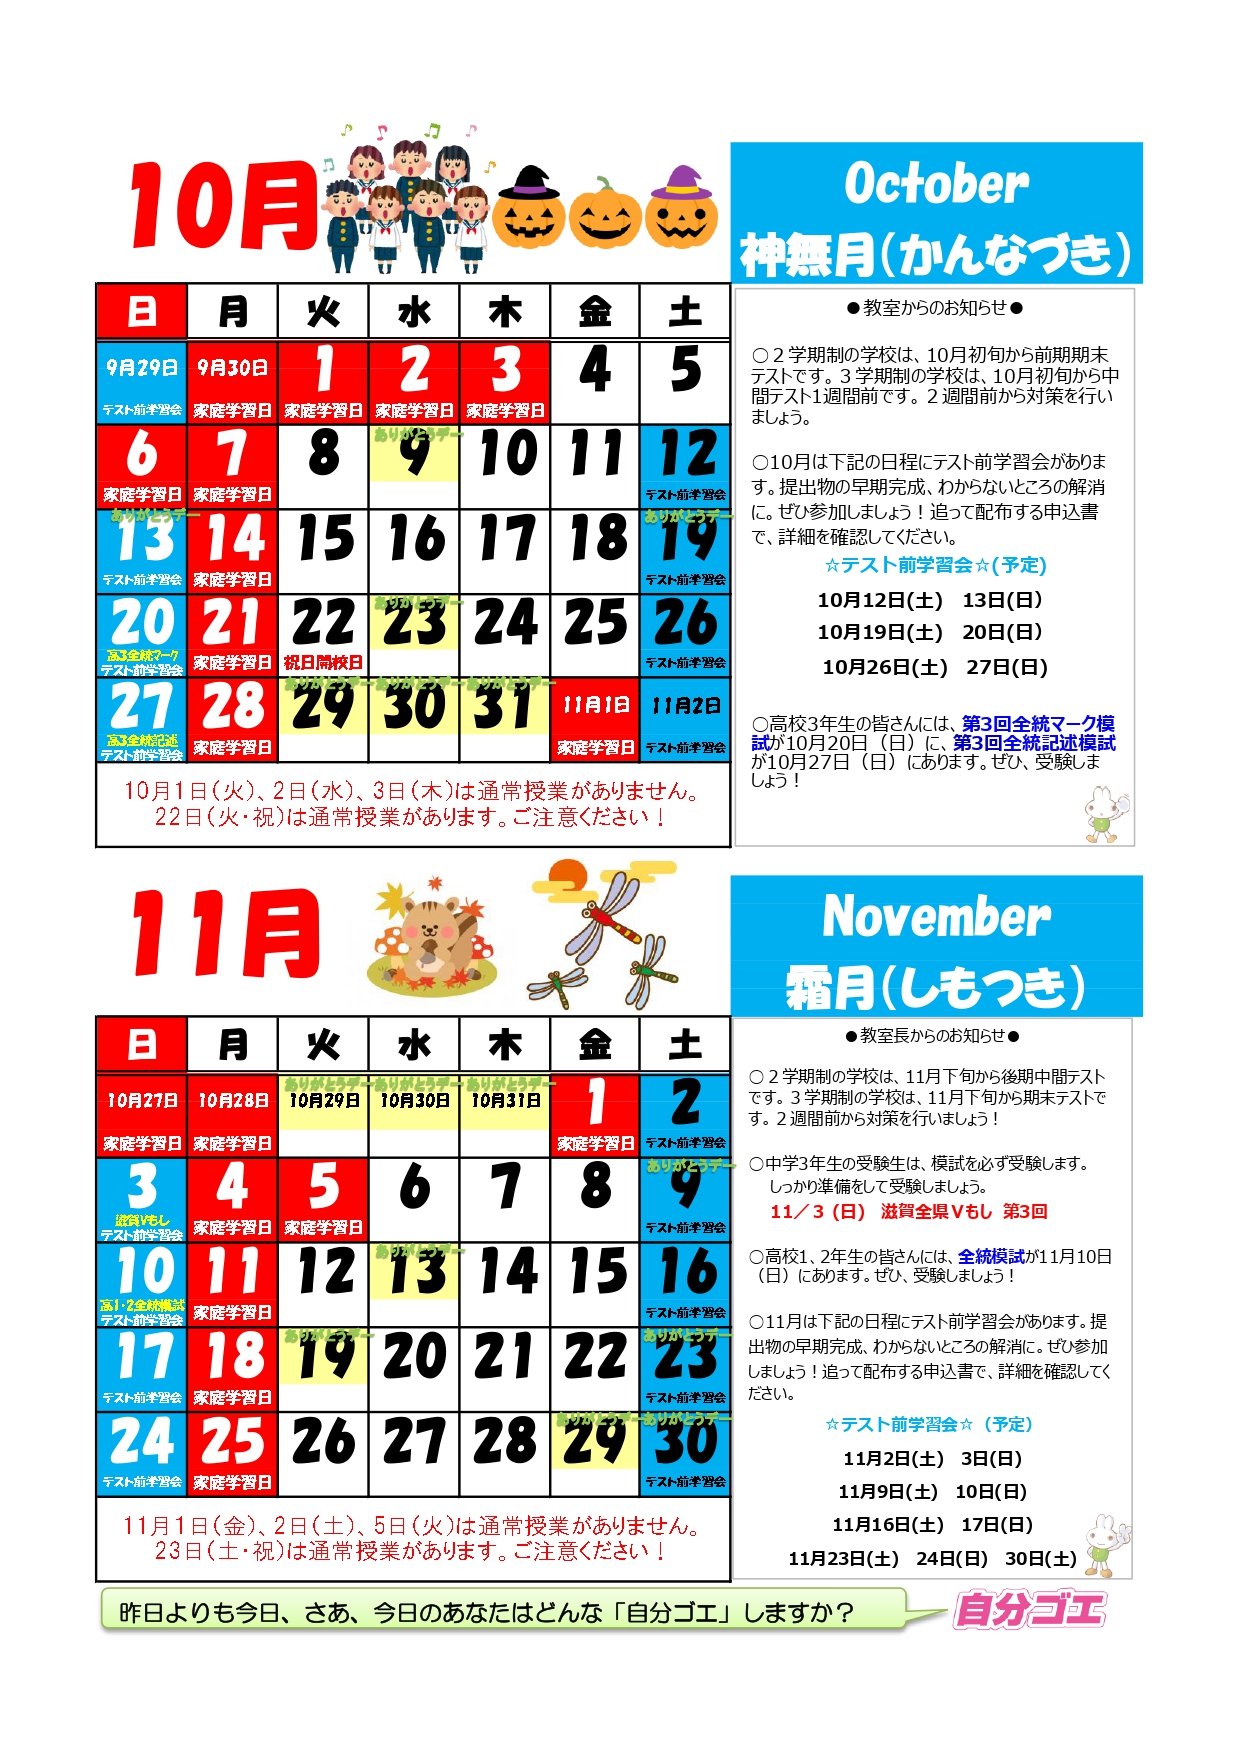 コピー【2019年度】ブースカレンダー2019年10月11月(たて)_page-0001.jpg